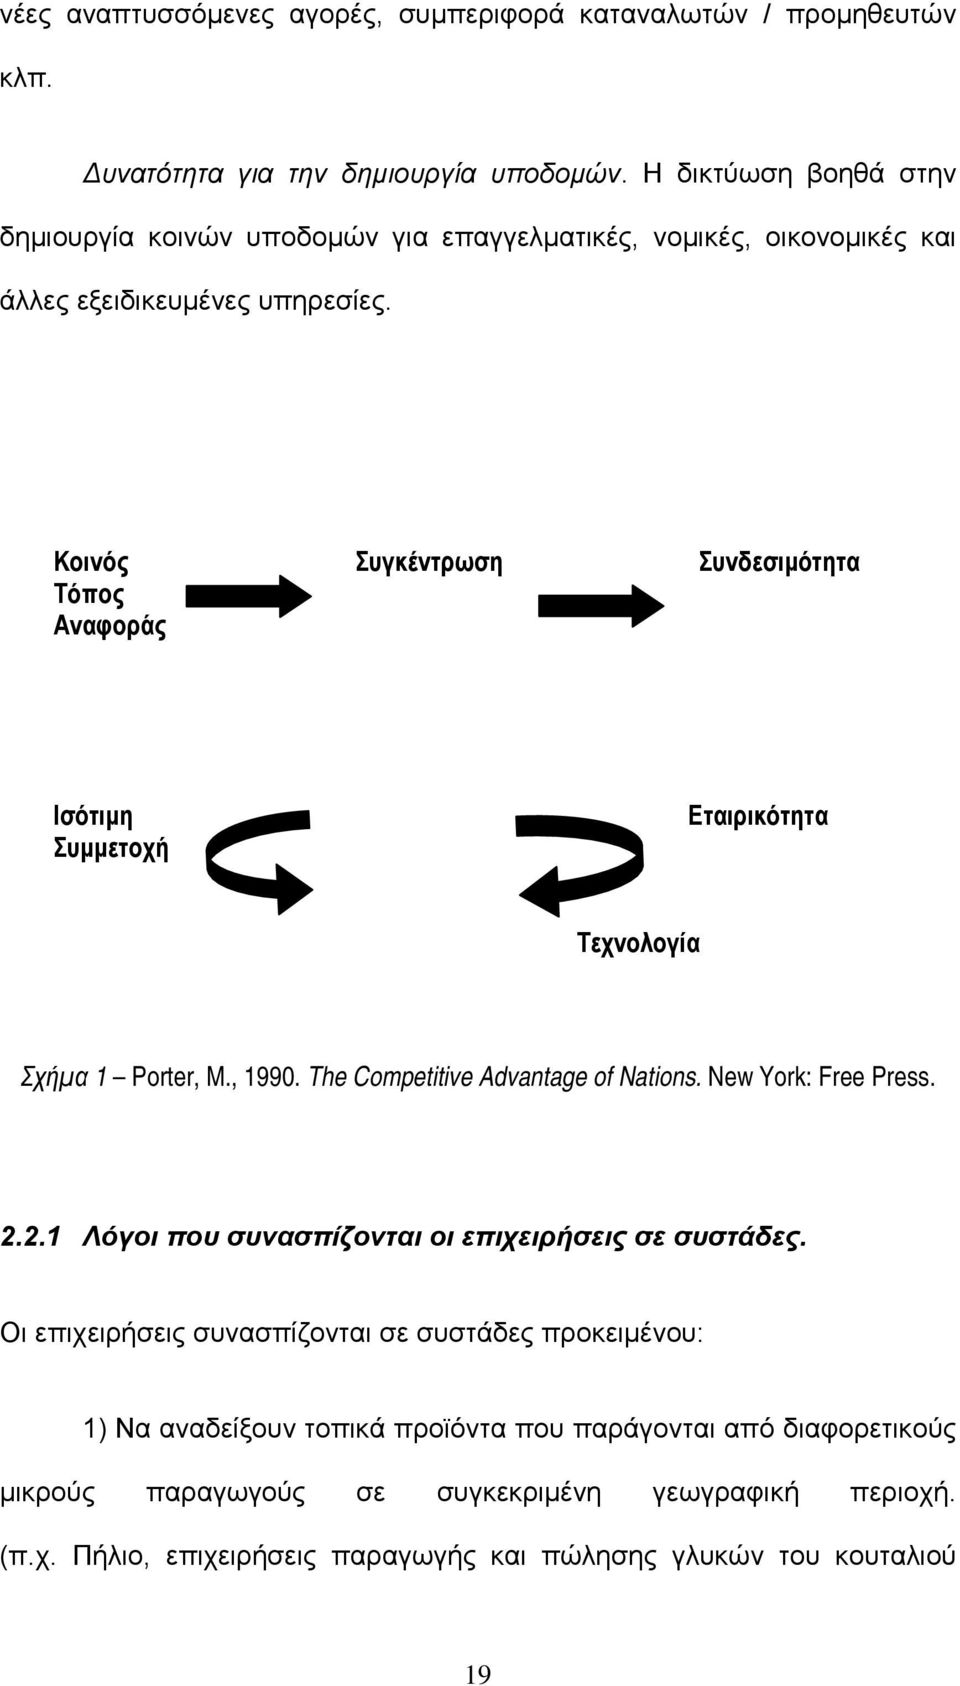 Κοινός Συγκέντρωση Συνδεσιµότητα Τόπος Αναφοράς Ισότιµη Συµµετοχή Εταιρικότητα Τεχνολογία Σχήµα 1 Porter, M., 1990. The Competitive Advantage of Nations. New York: Free Press. 2.